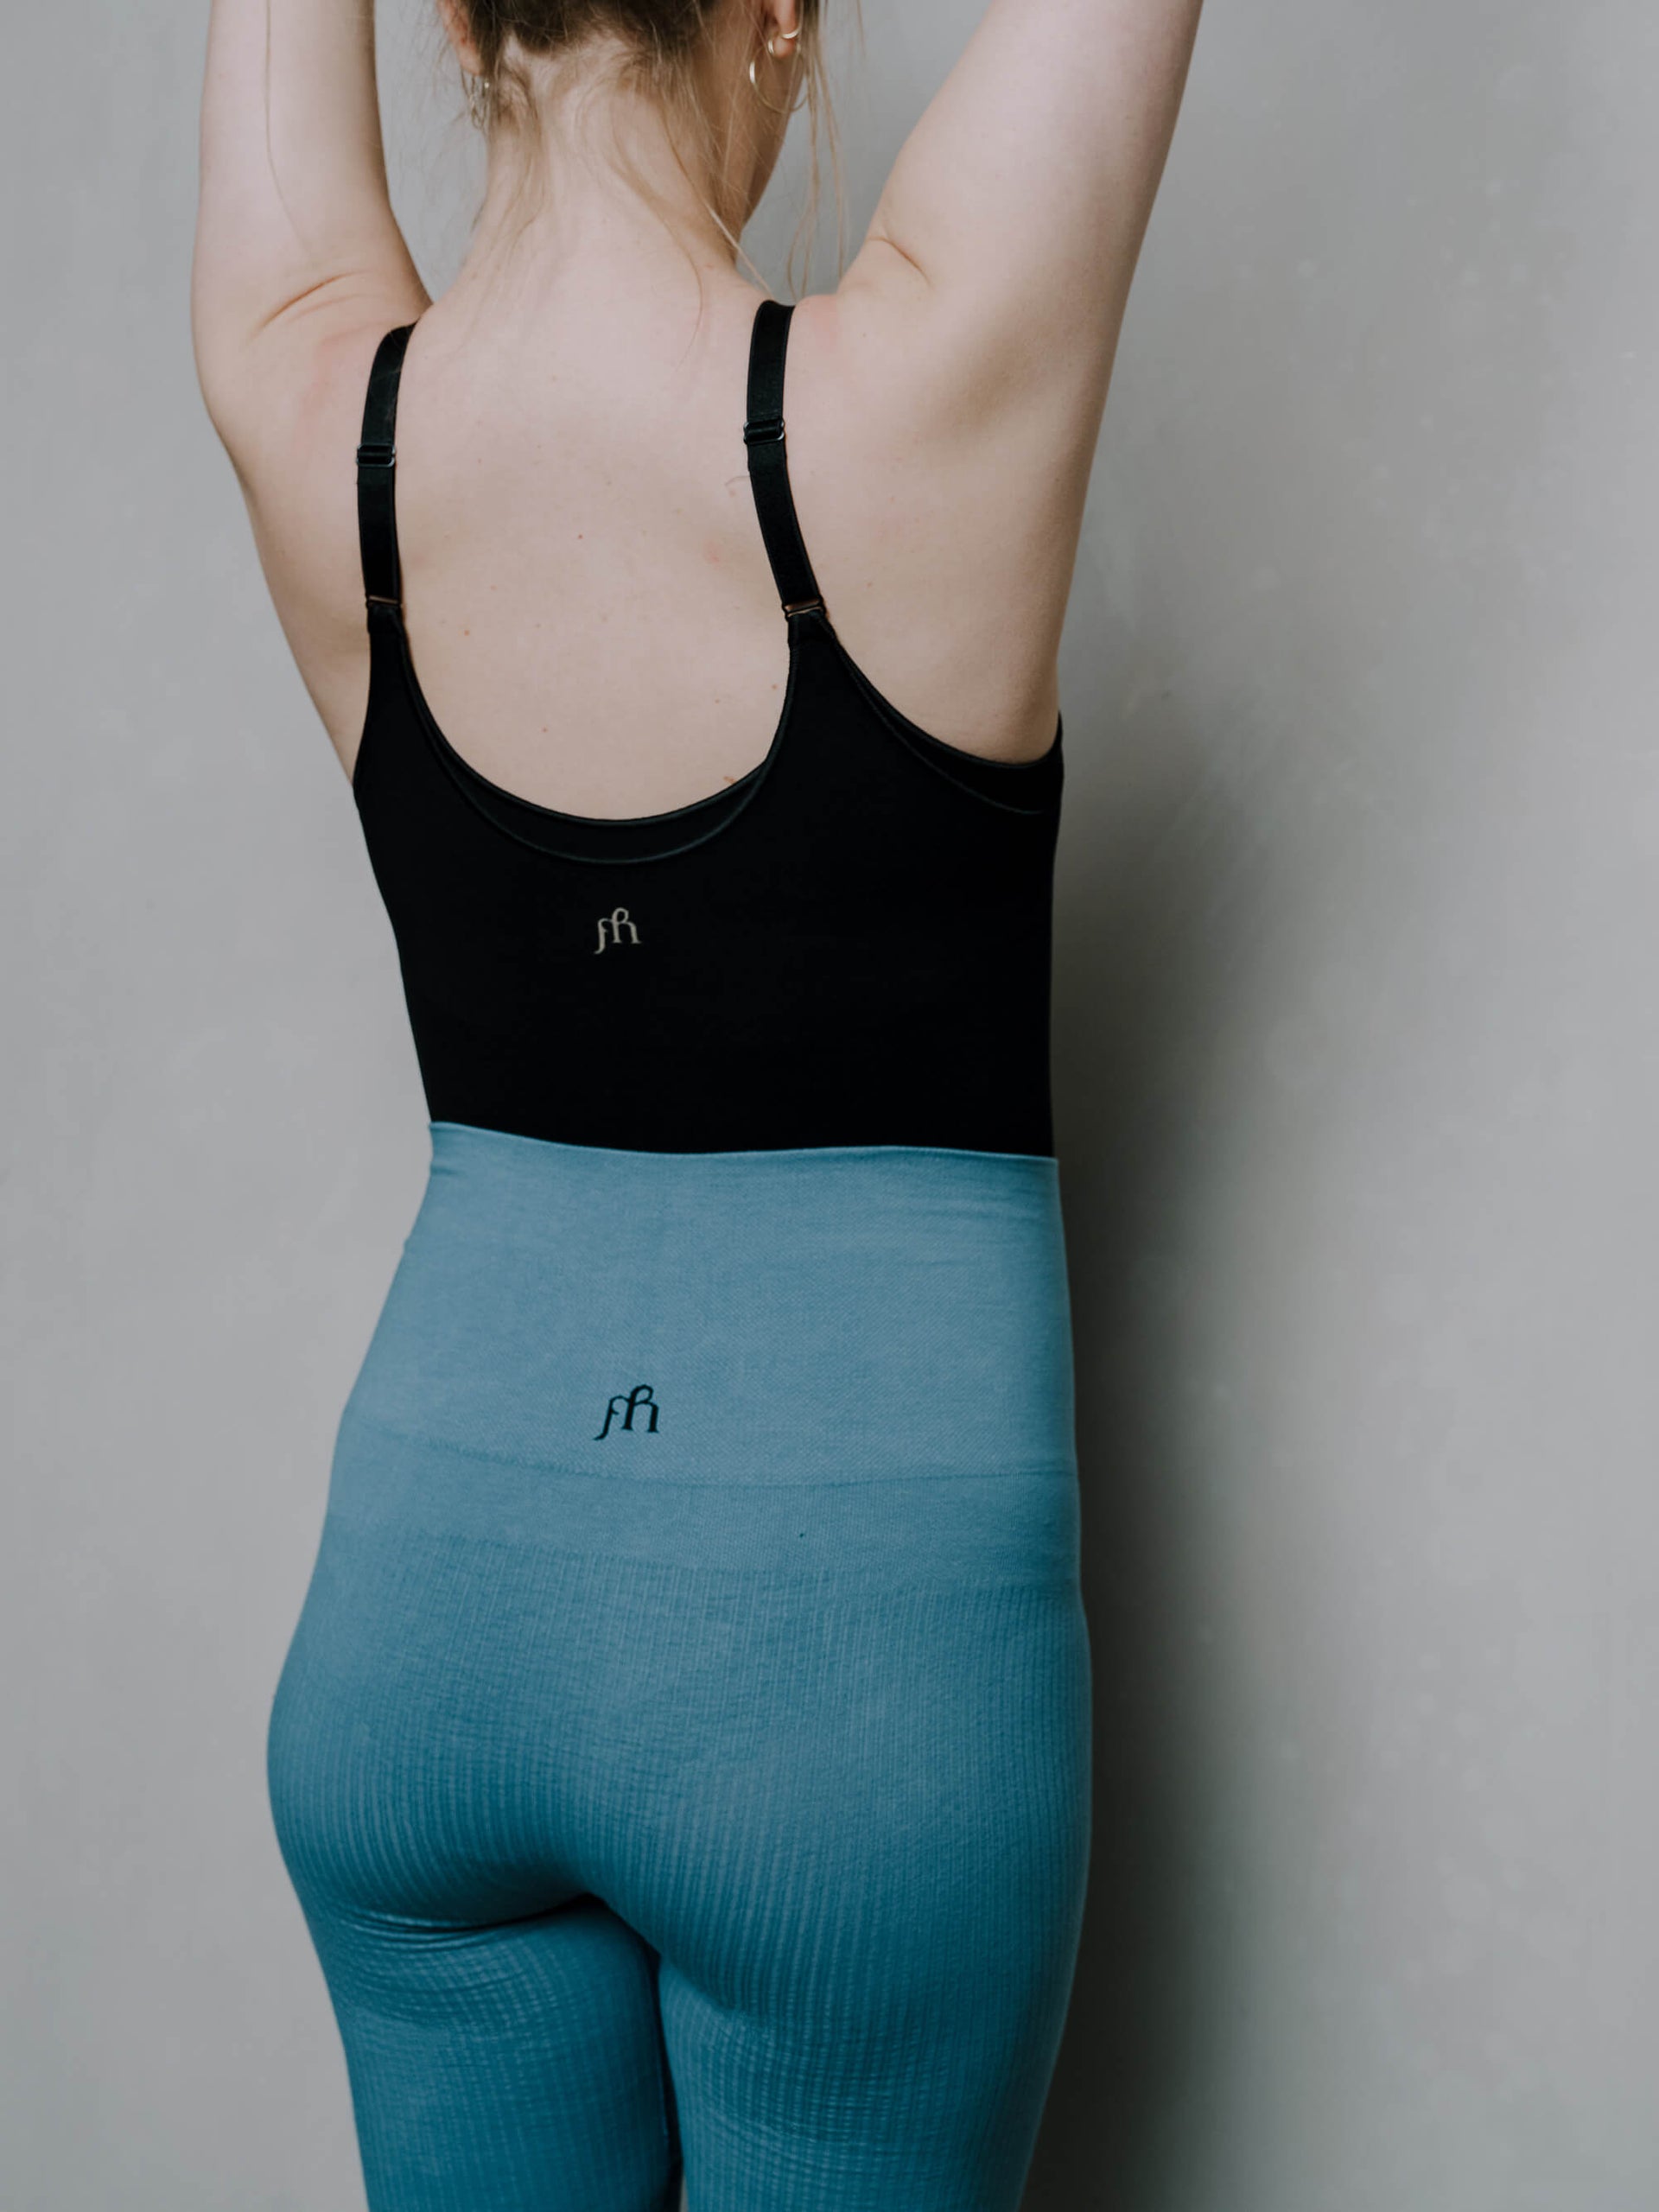 Jorgen House Blue colour high waist leggings and black strap bodysuit on female body